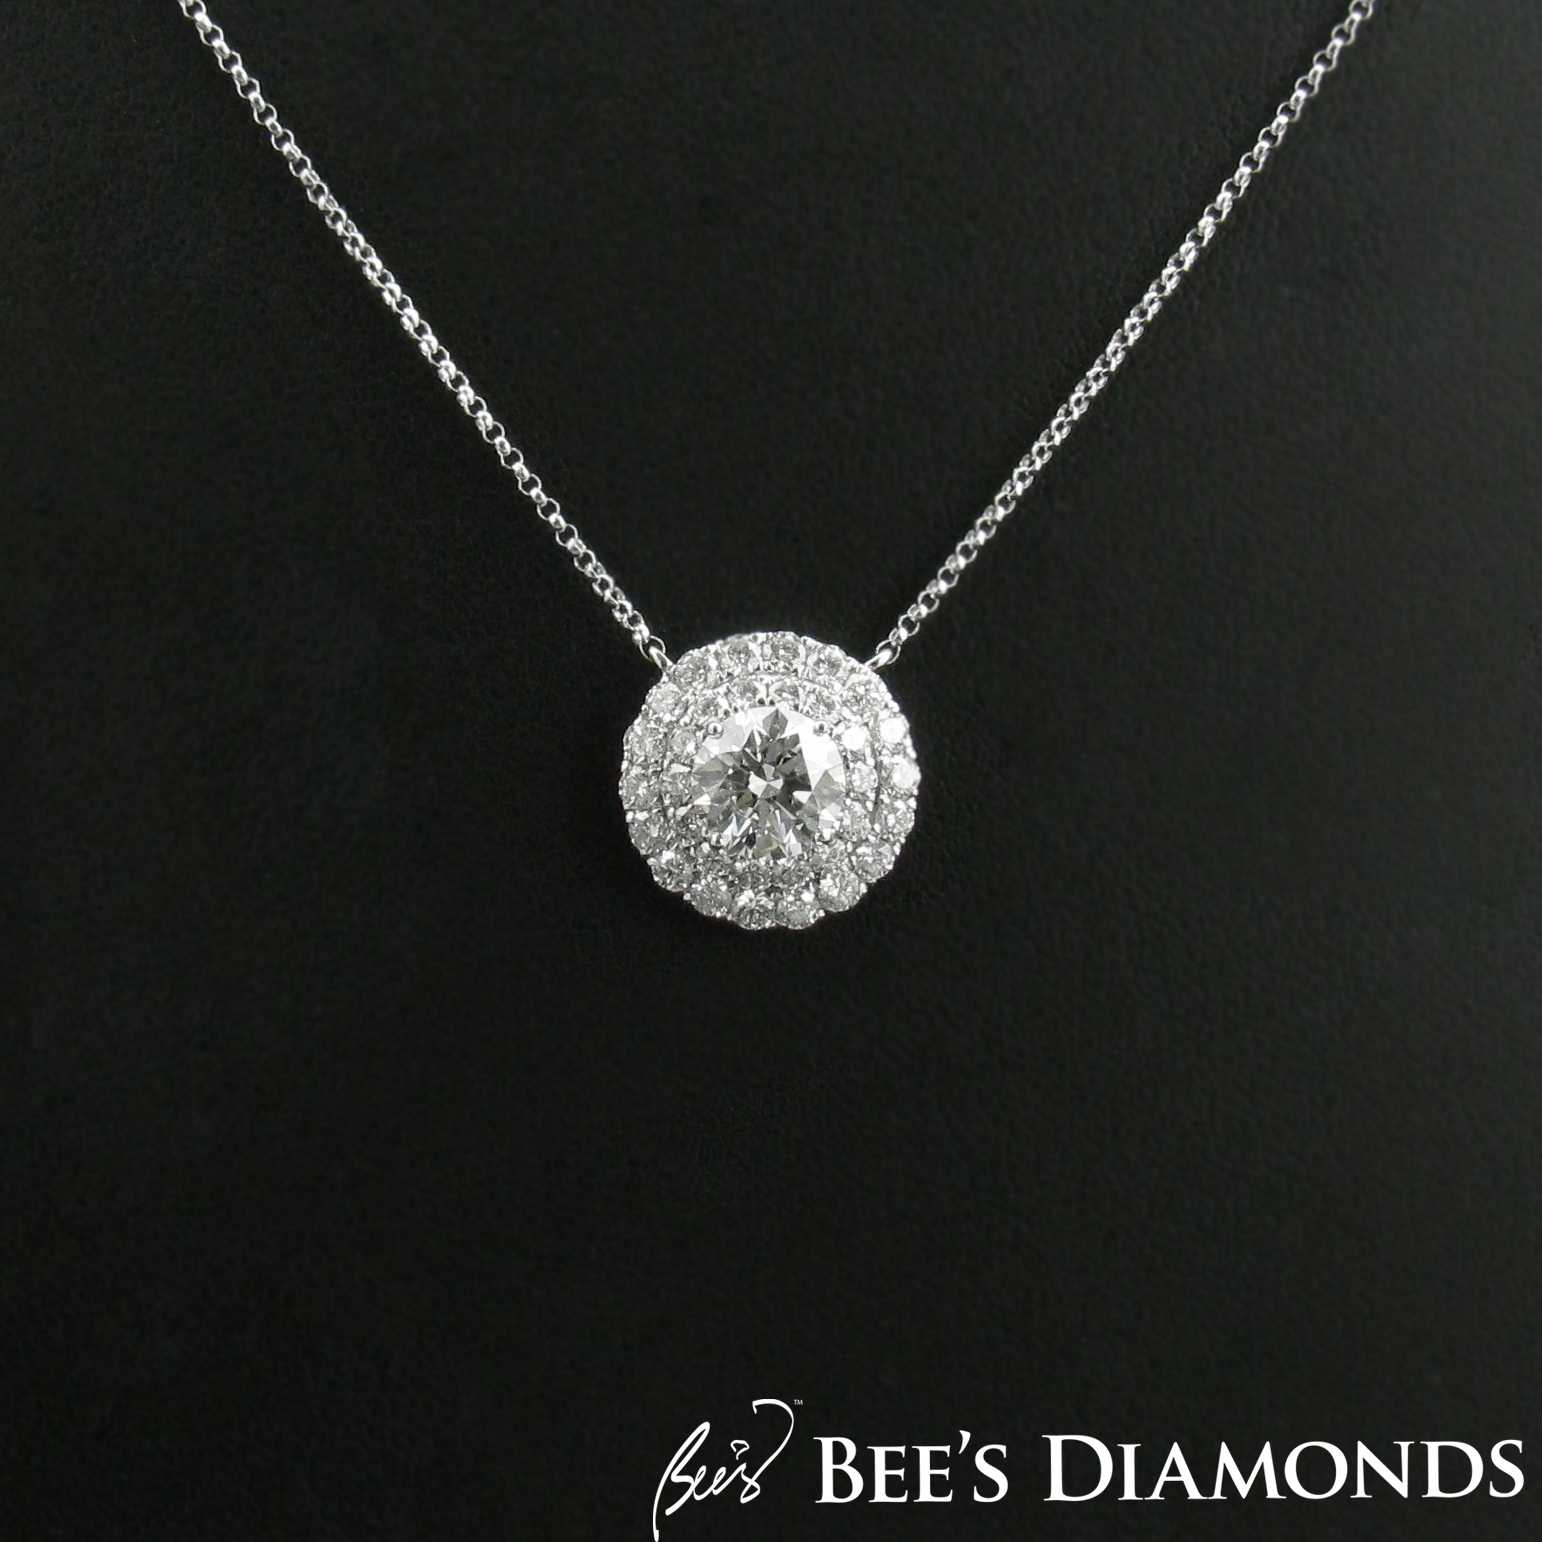 Solitaire diamond pendant with two halos, GIA diamond